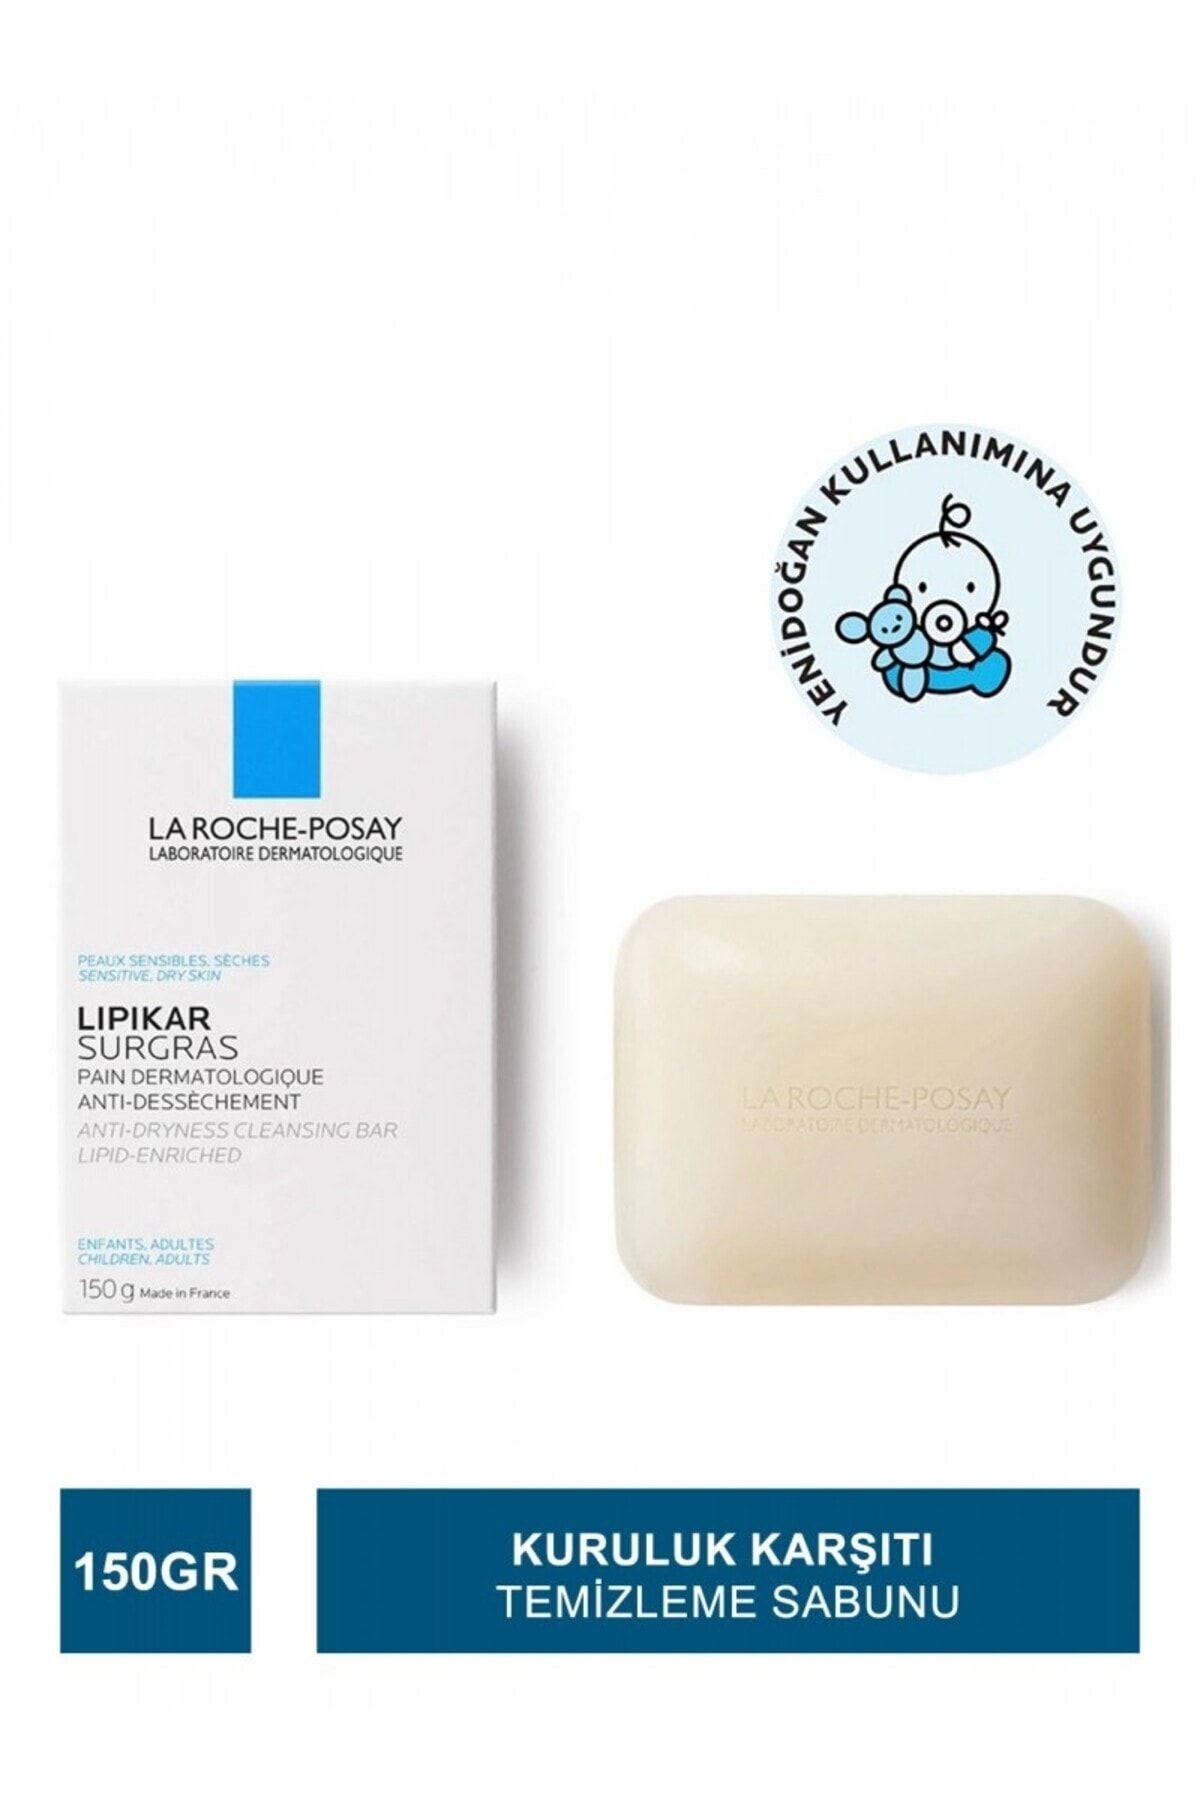 La Roche Posay Lipikar - Hassas Ve Kuru Ciltler İçin Kuruluk Karşıtı Temizleme Sabunu 150 gr